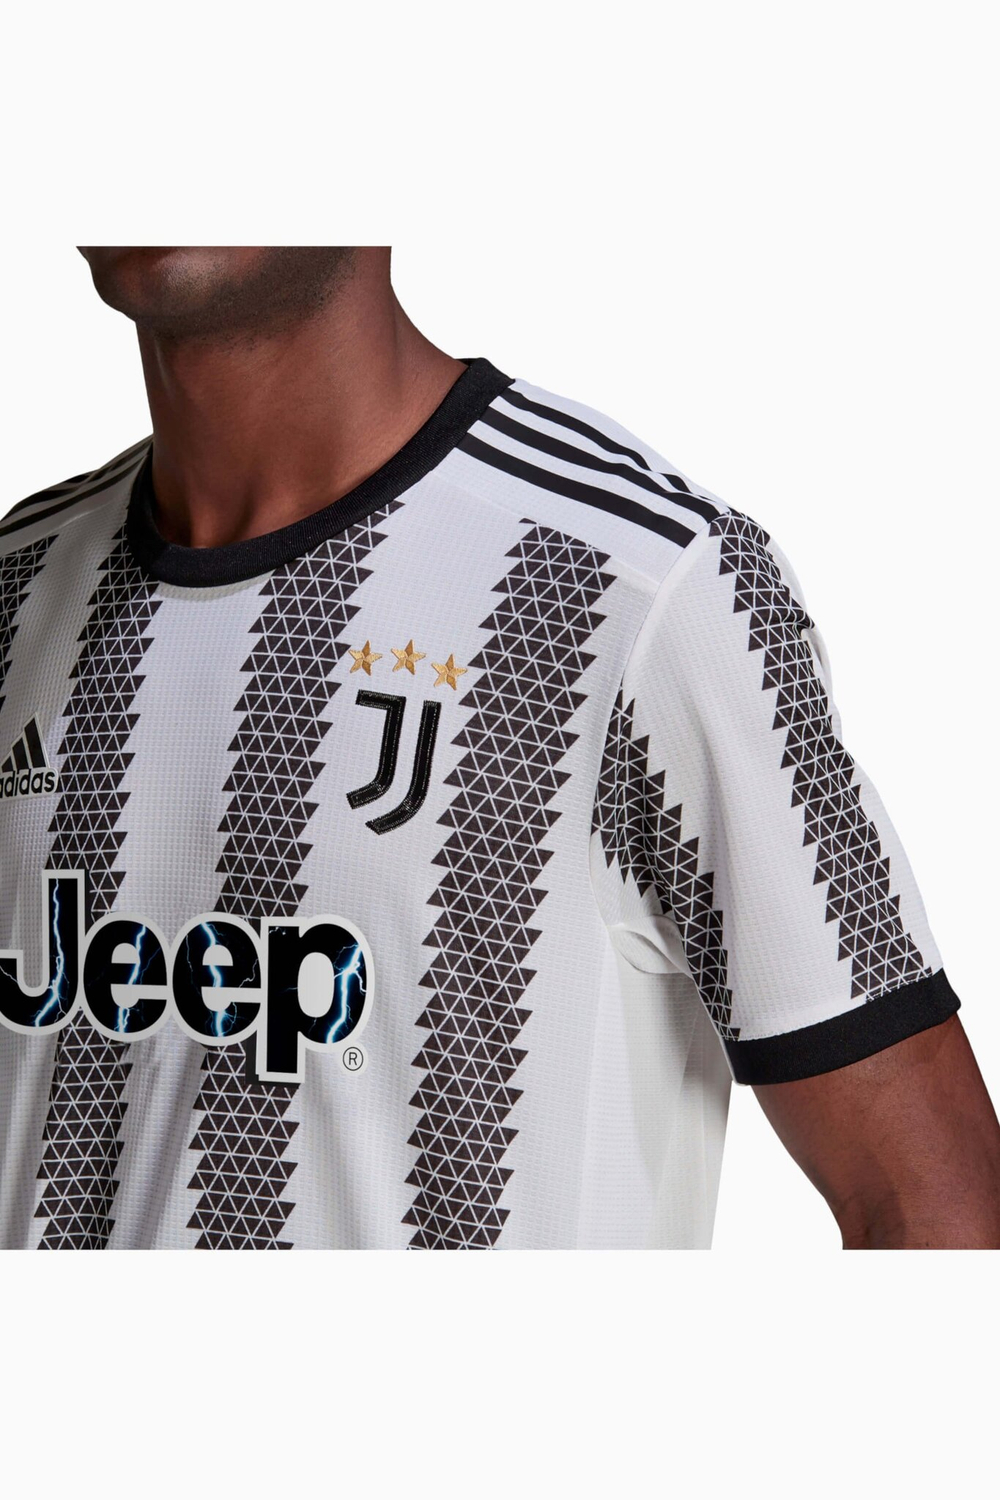 Футболка adidas Juventus FC 22/23 Home Authentic